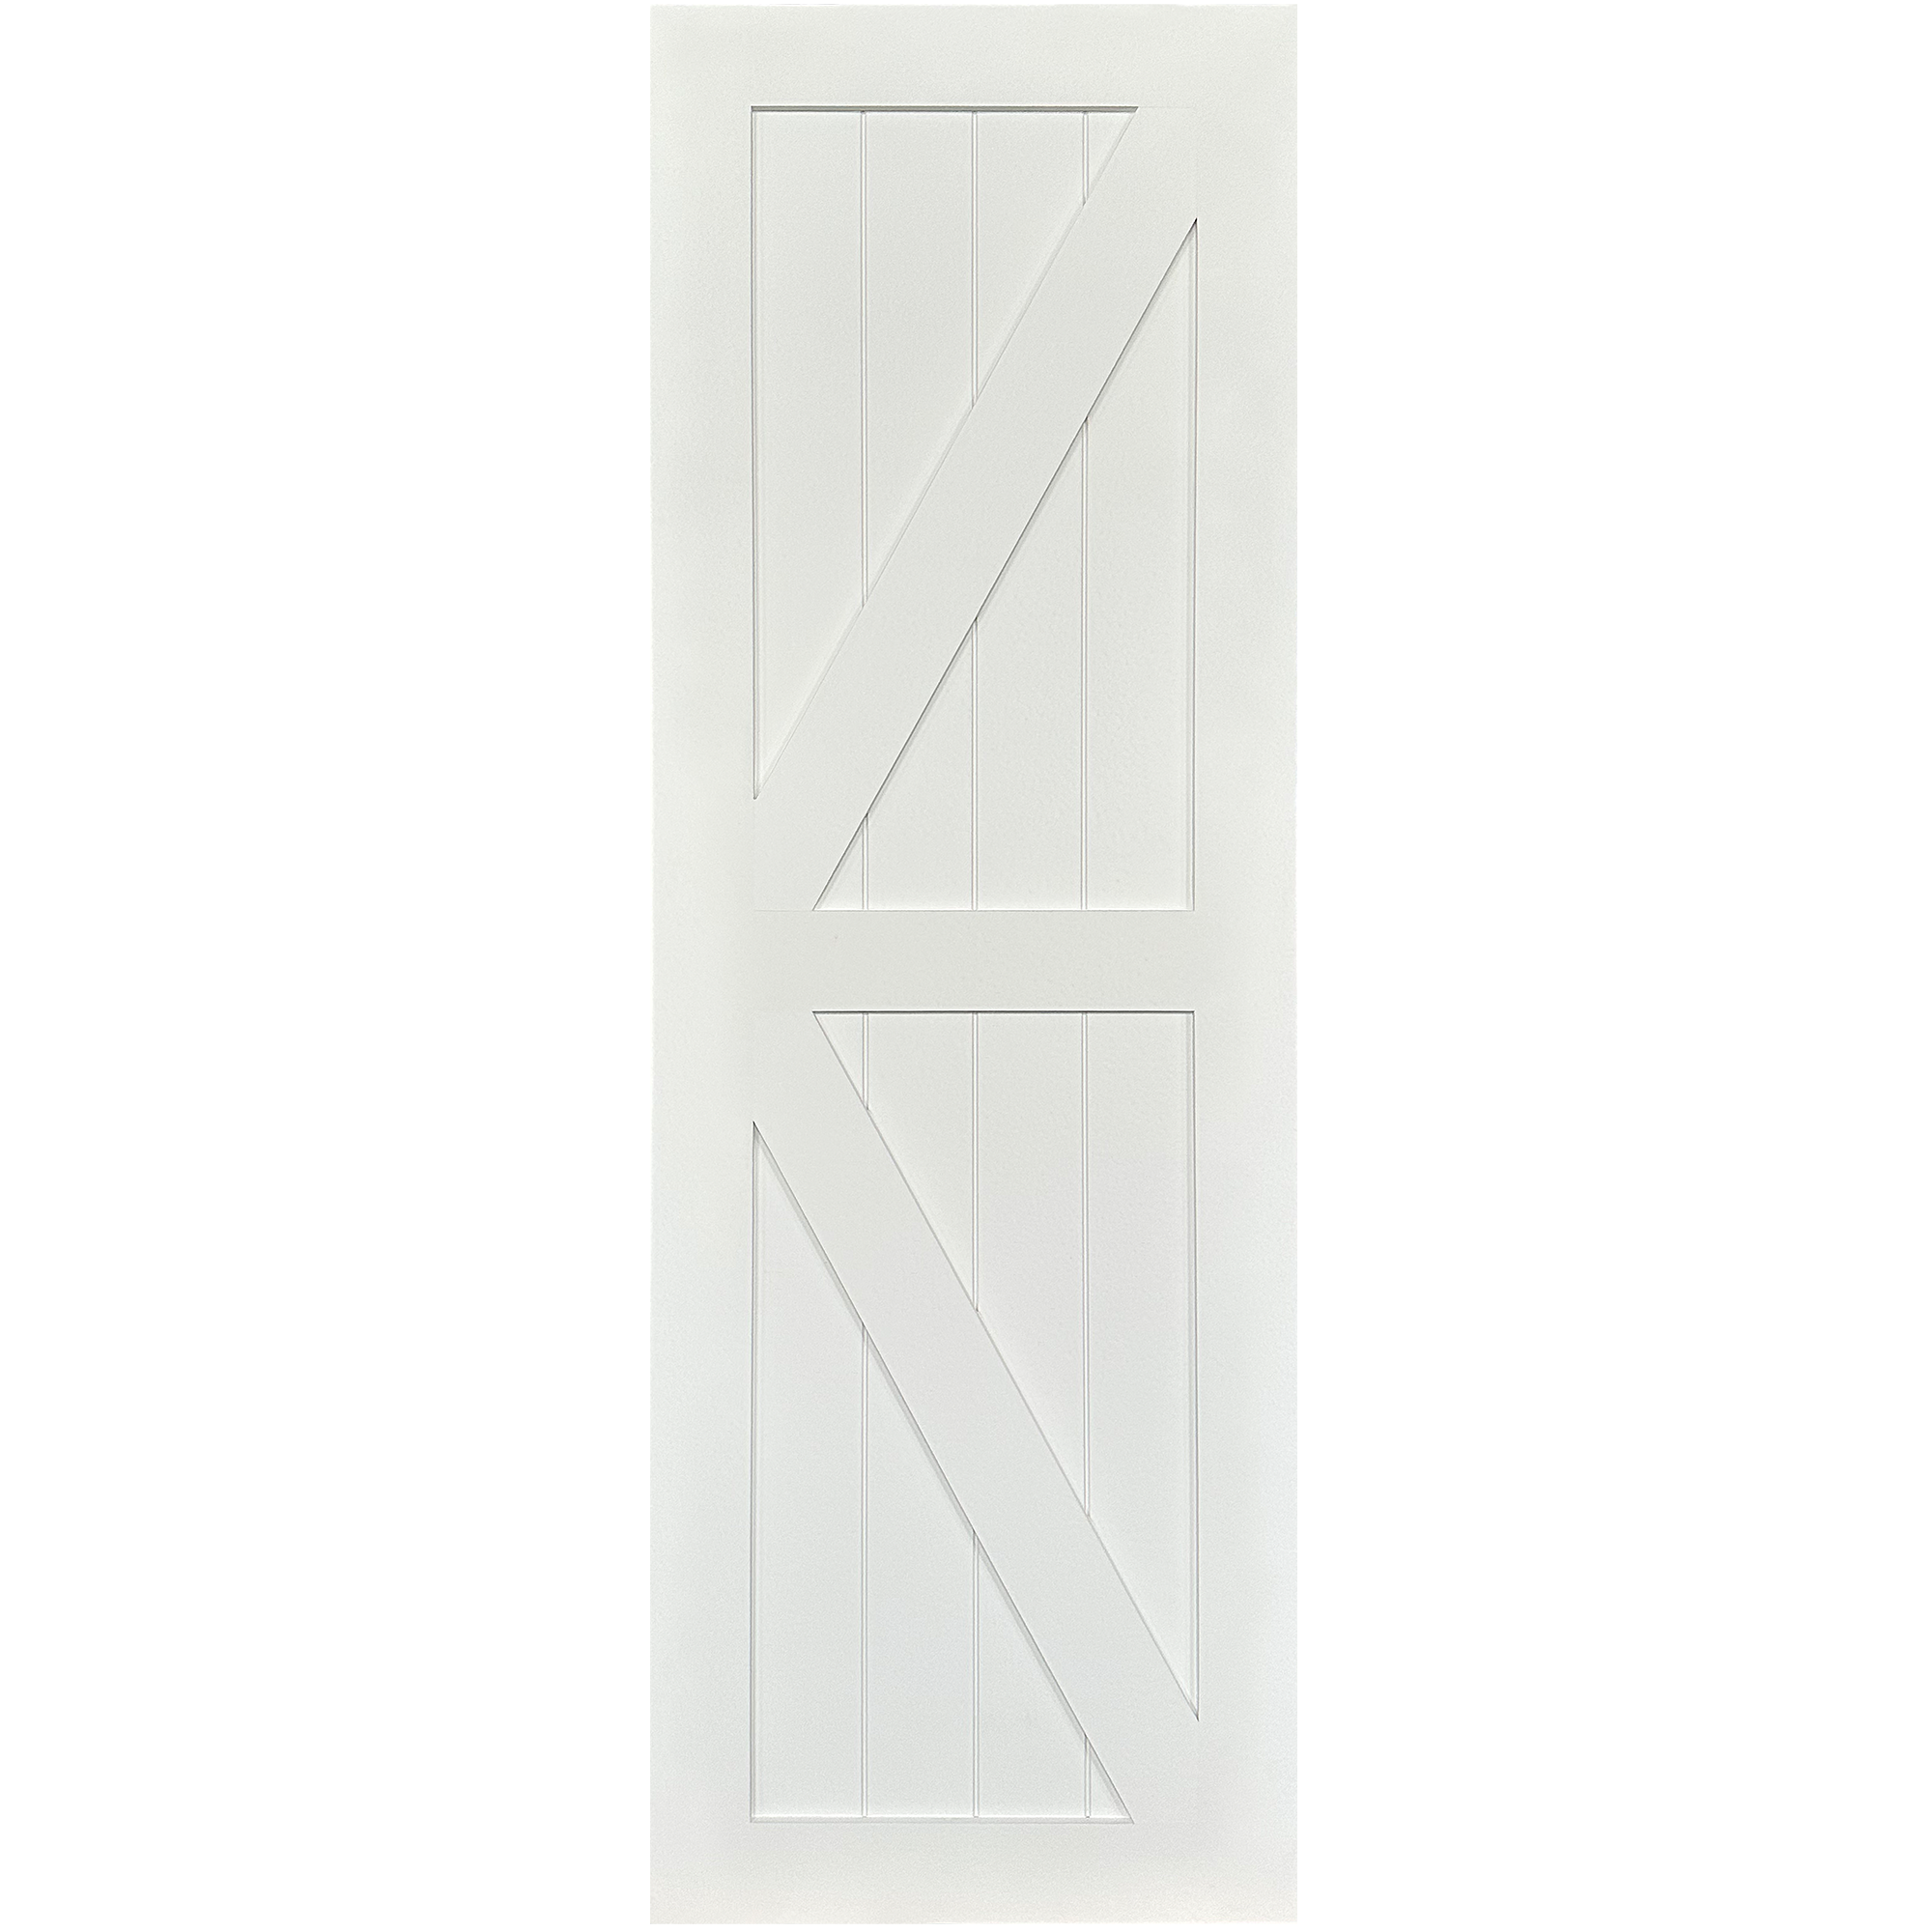 Get The K-Barn Door Without Hardware – Waydoor